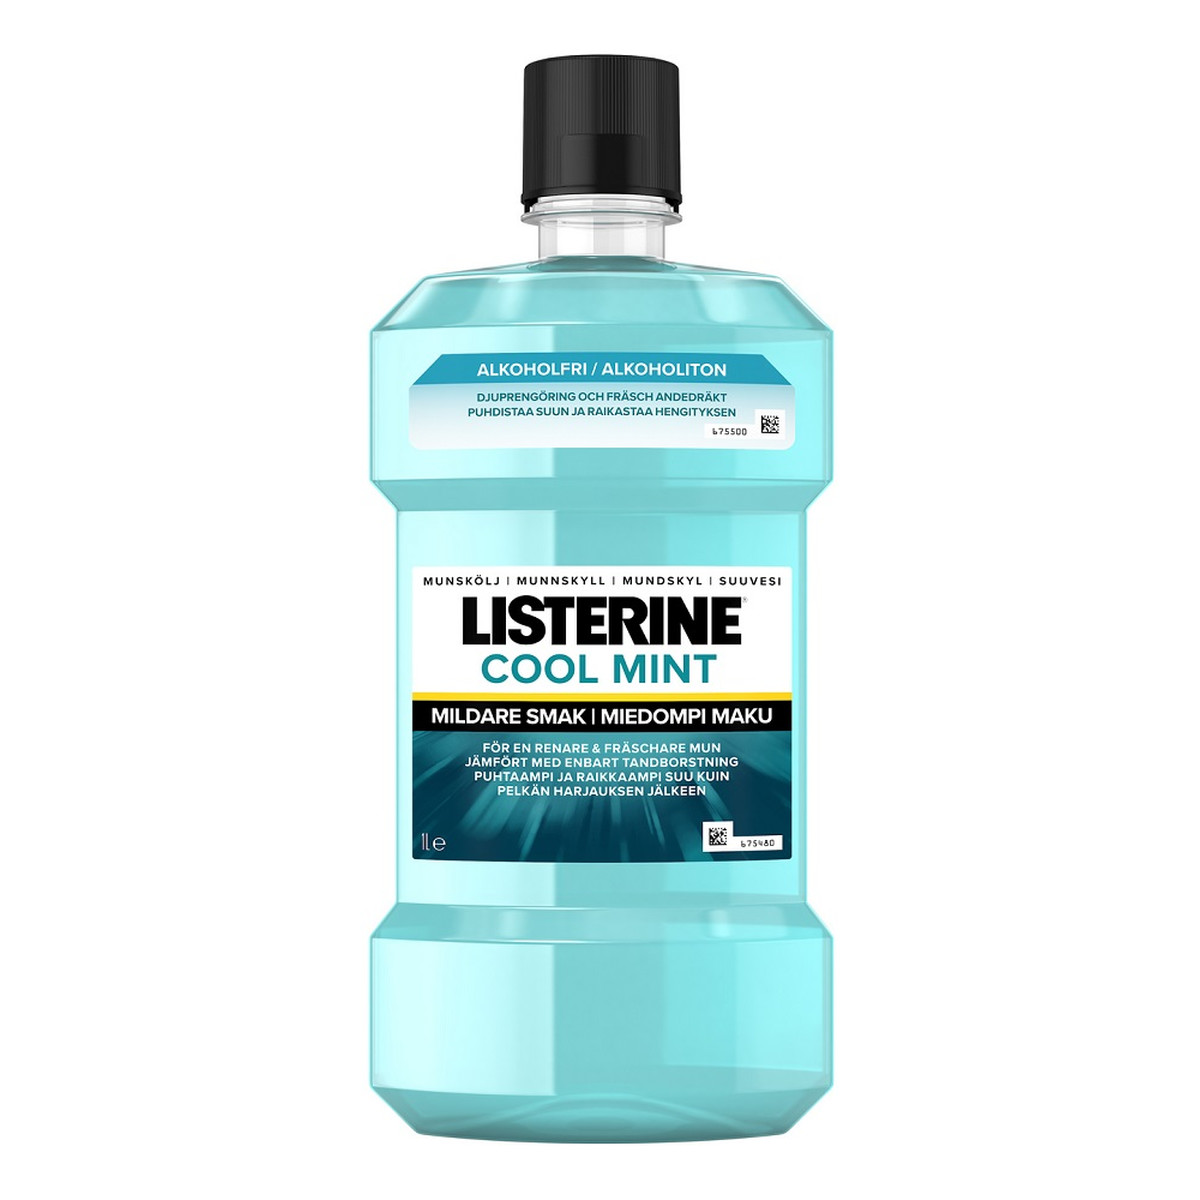 Listerine Cool mint płyn do płukania jamy ustnej mildare 1000ml